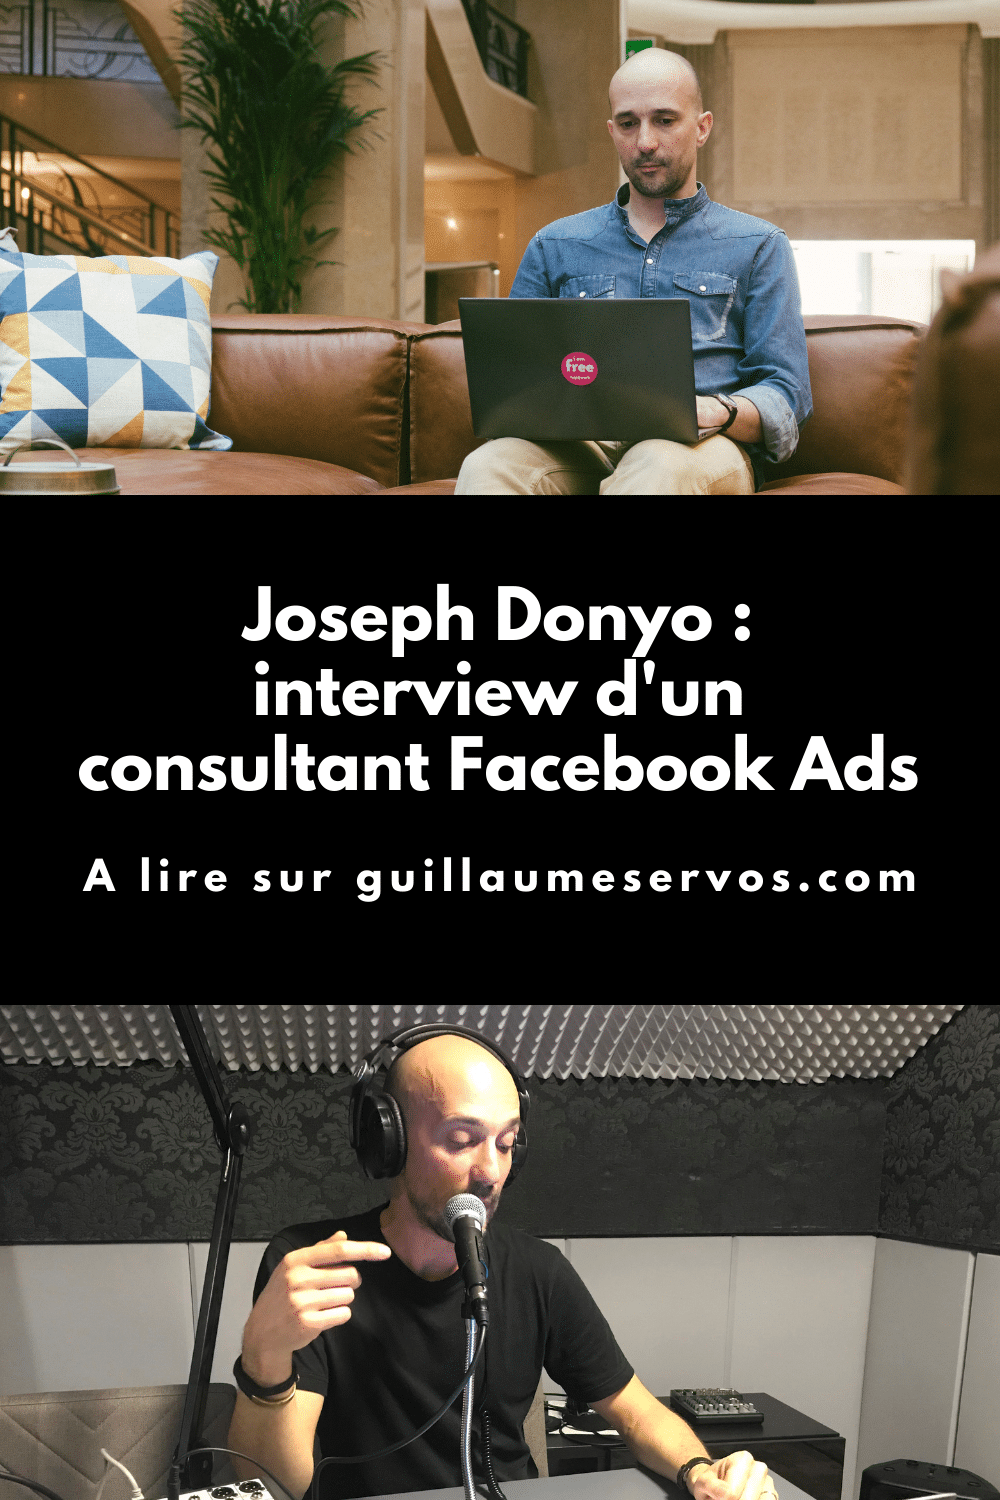 Découvre mon interview avec Joseph Donyo, consultant Facebook Ads et créateur du podcast "No pay no play". Au menu : son rapport au freelancing, au podcasting, aux réseaux sociaux et au voyage.